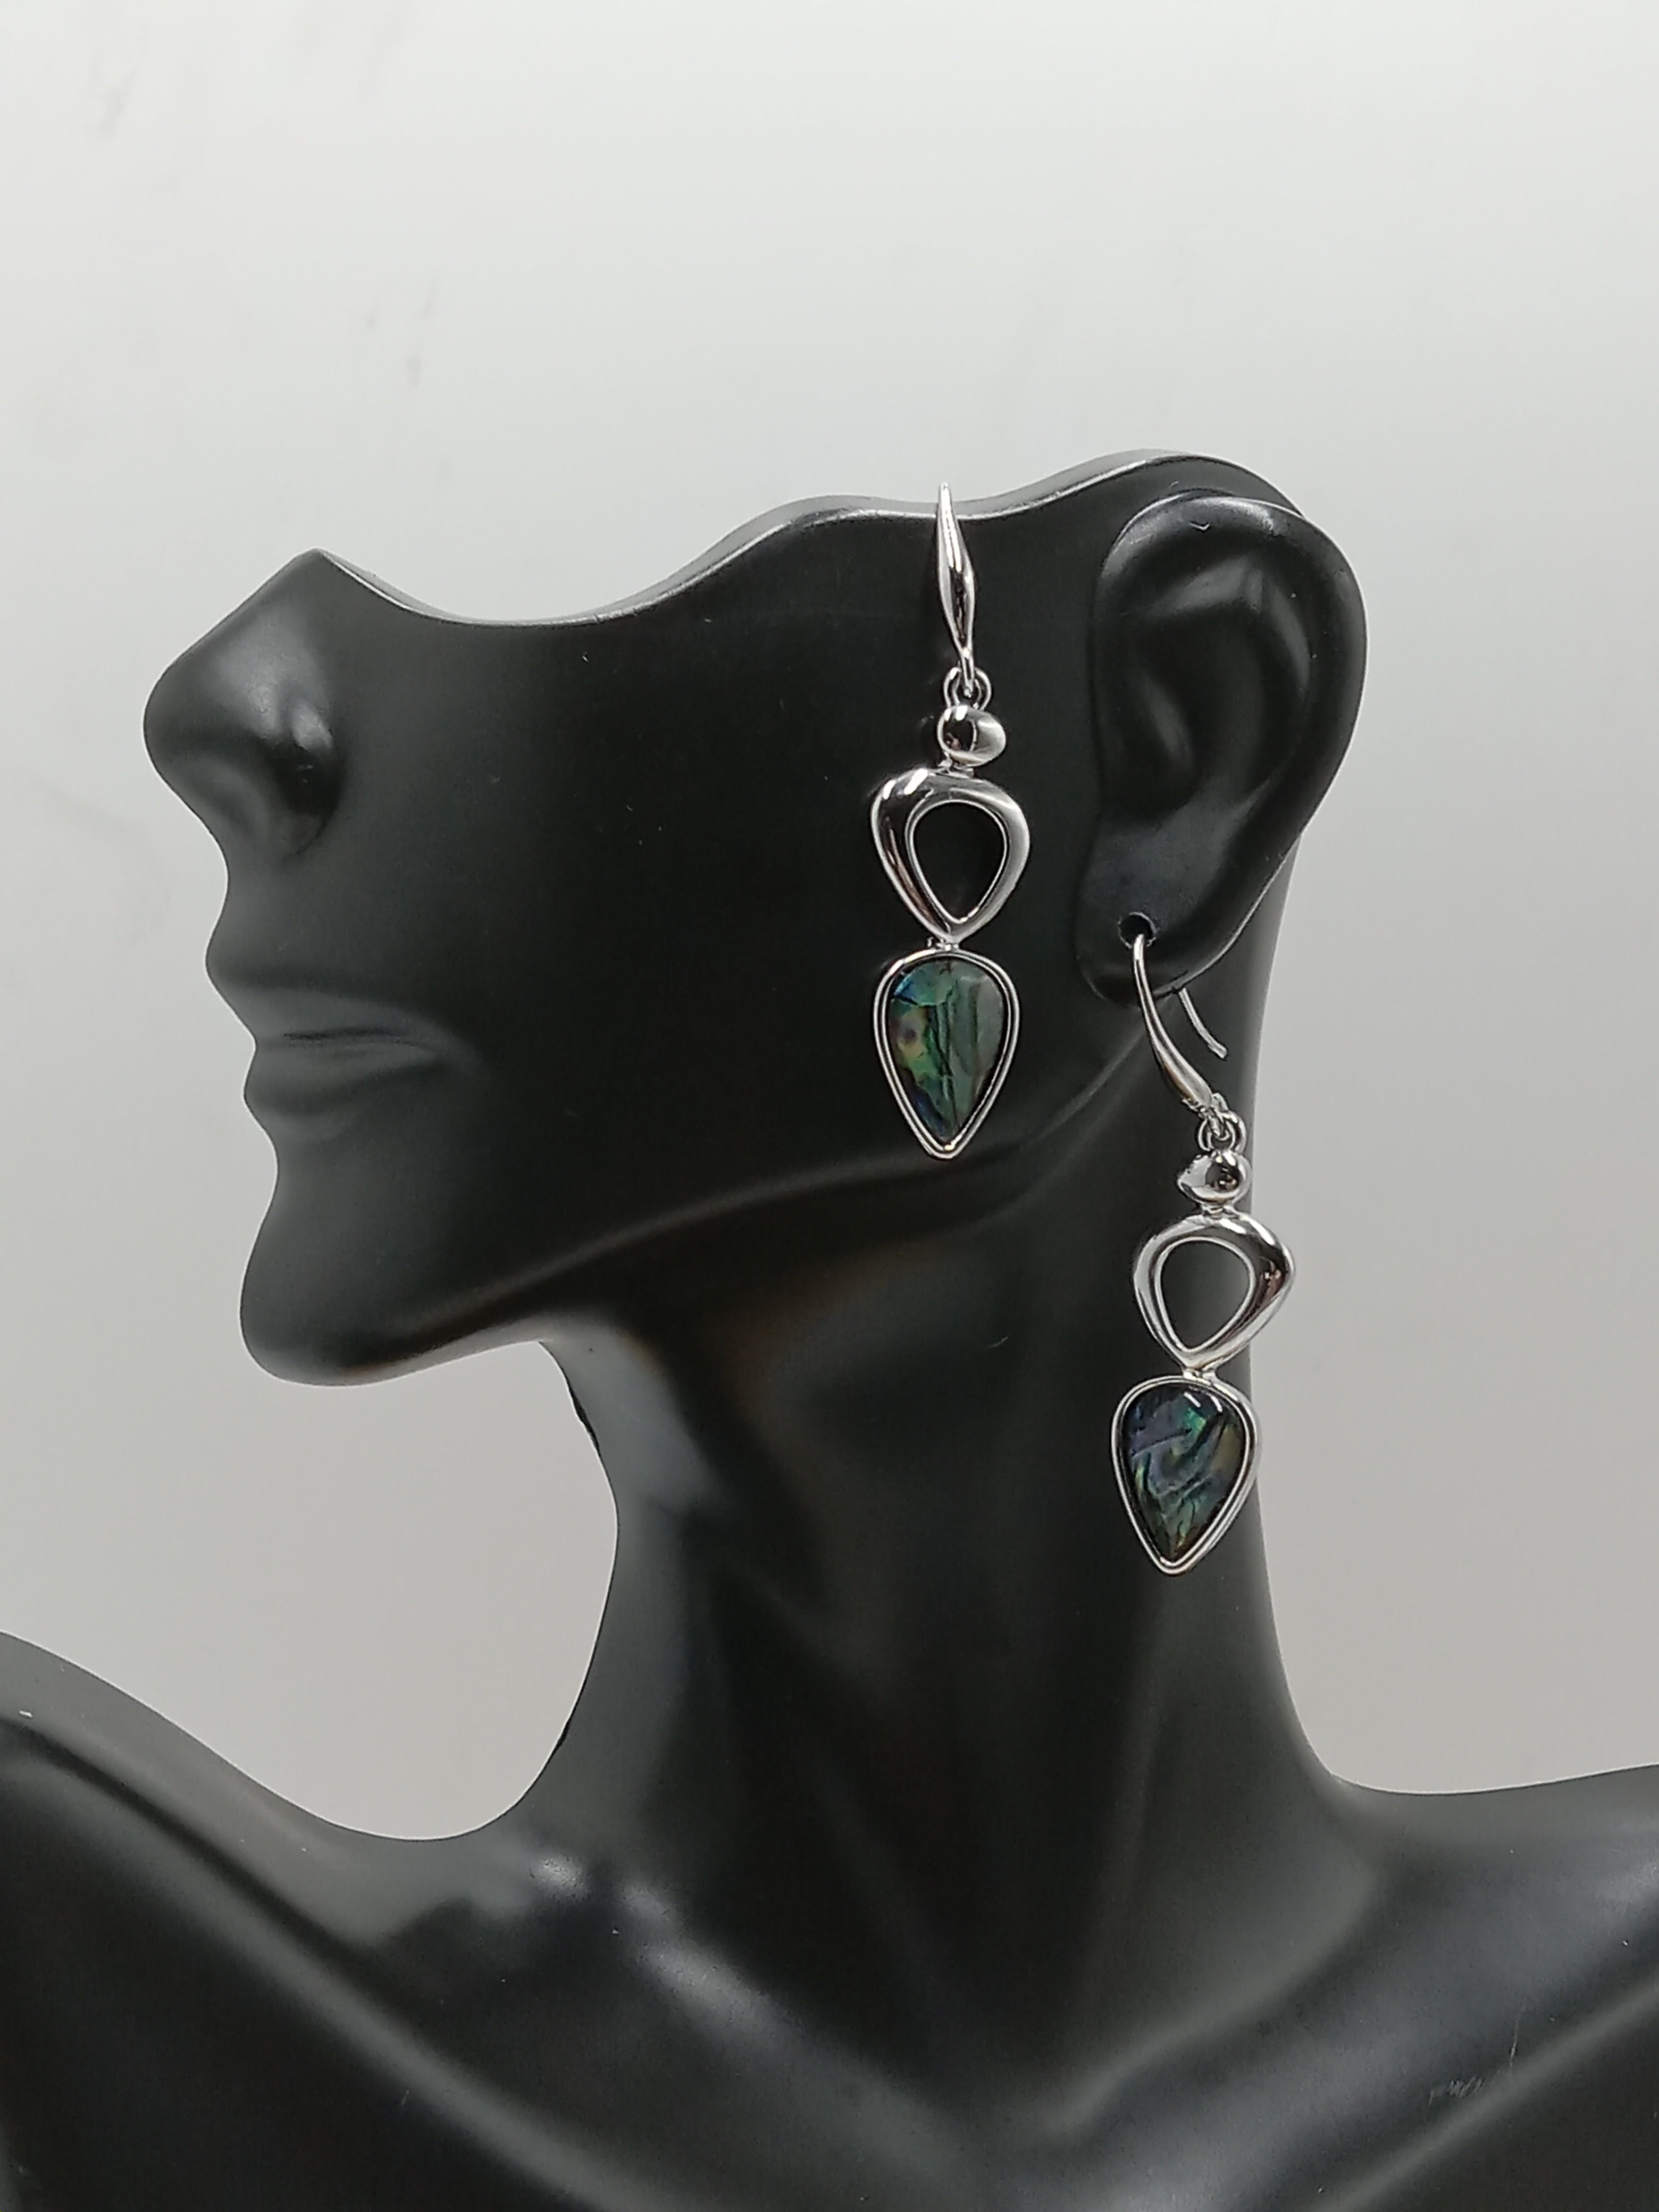 Stunning Abalone Shell & Aluminum Earrings